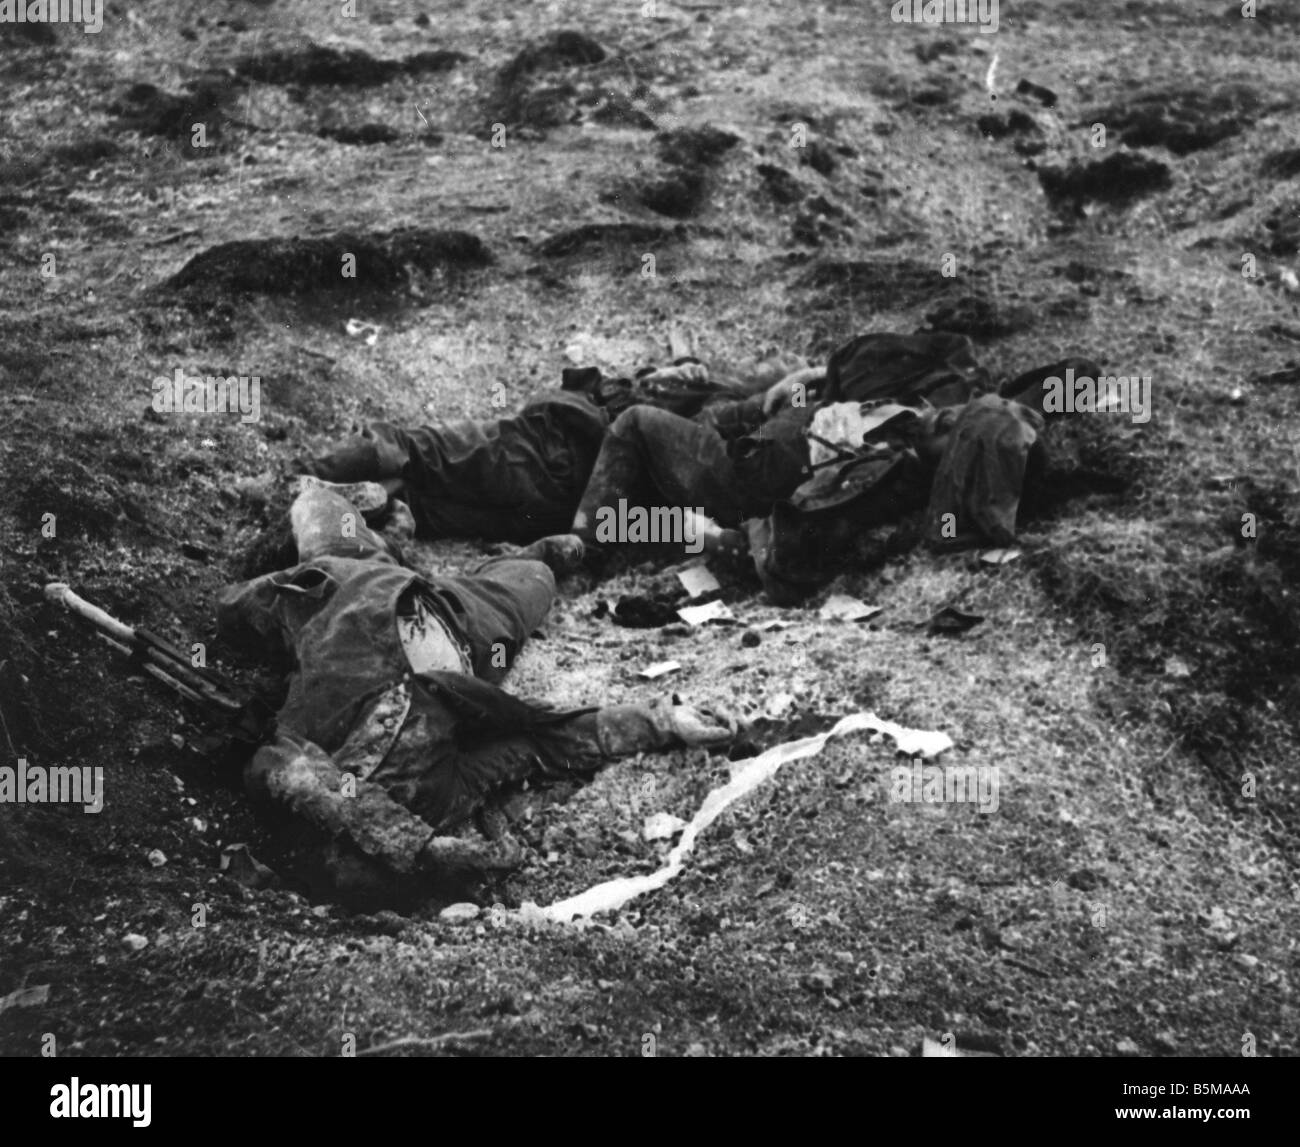 2 G55 W1 1915 19 E WWI Killed deutsche Soldaten 1915 Geschichte WWI Western Front deutsche Soldaten getötet in Aktion nach hit by Stockfoto